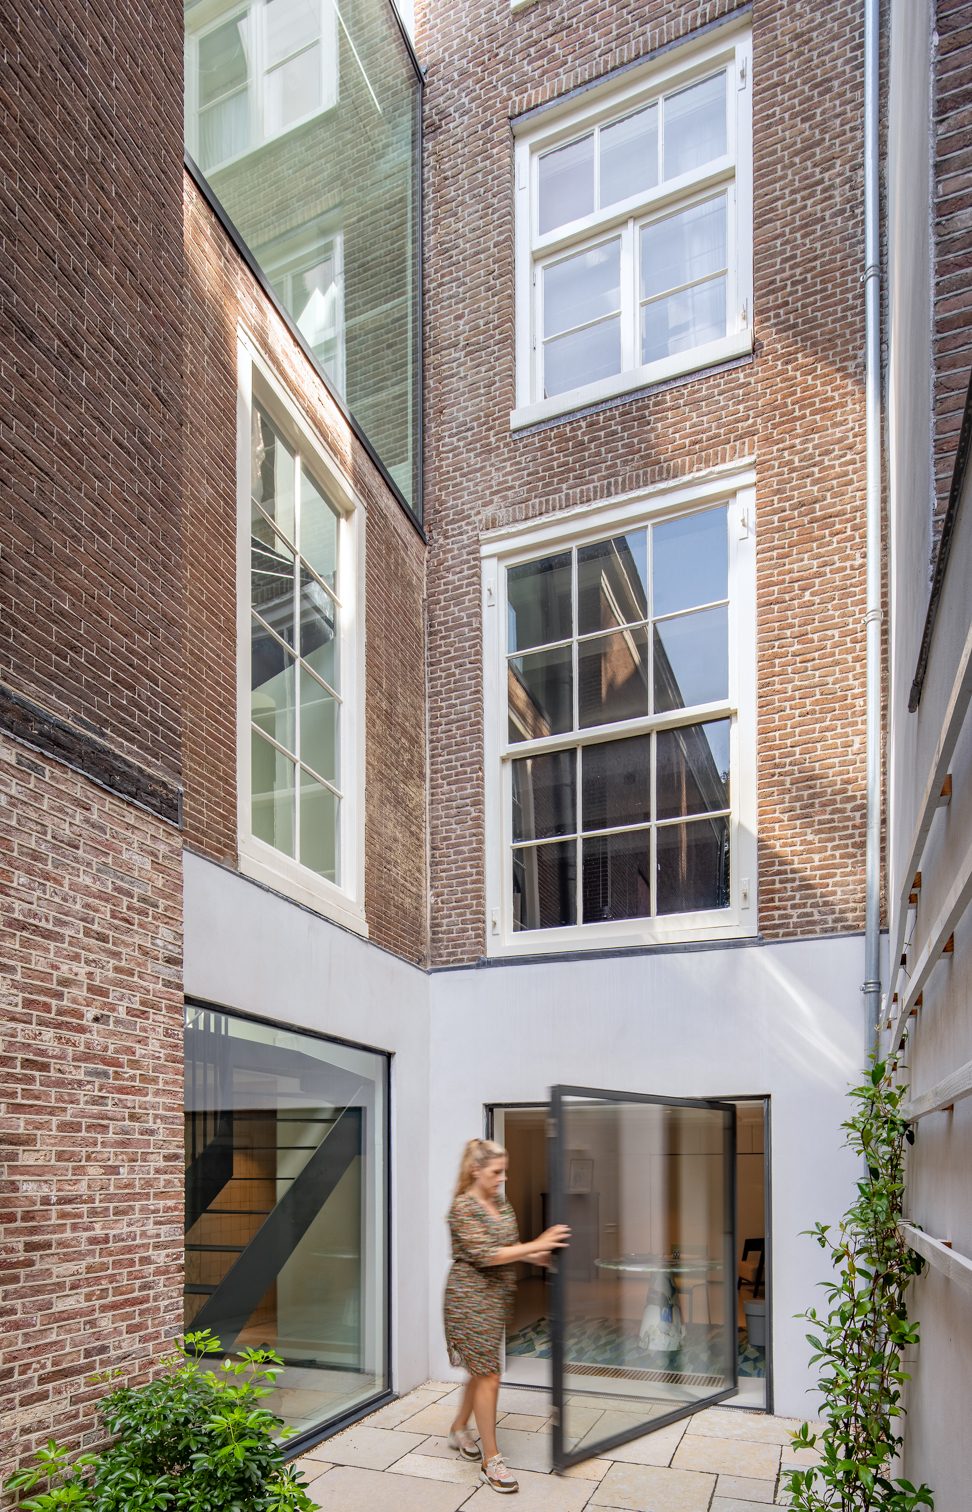 https://www.heyligersarchitects.nl/wp-content/uploads/2021/10/Heyligers_interieur_woonhuis_grachtenpand_architect_WoutervanderSar_canalhouse-11-e1600179071419.jpg